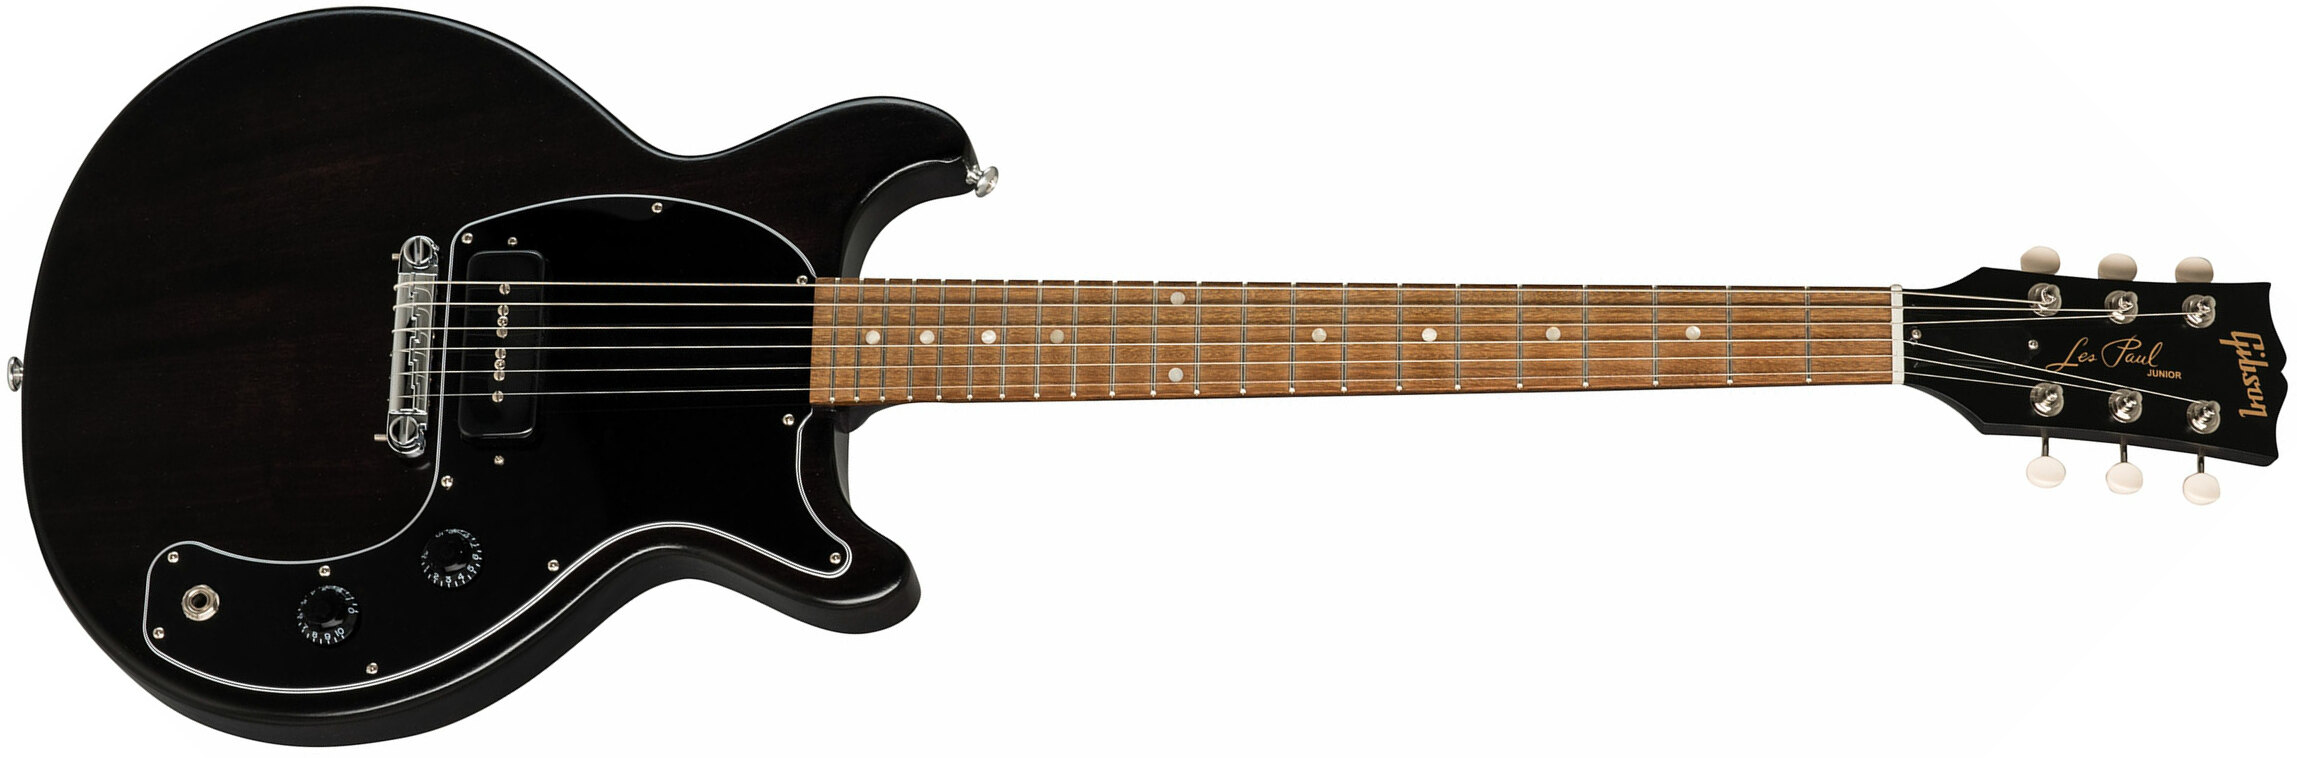 Gibson Les Paul Junior Dc Tribute 2019 P90 Ht Rw - Worn Ebony - Enkel gesneden elektrische gitaar - Main picture